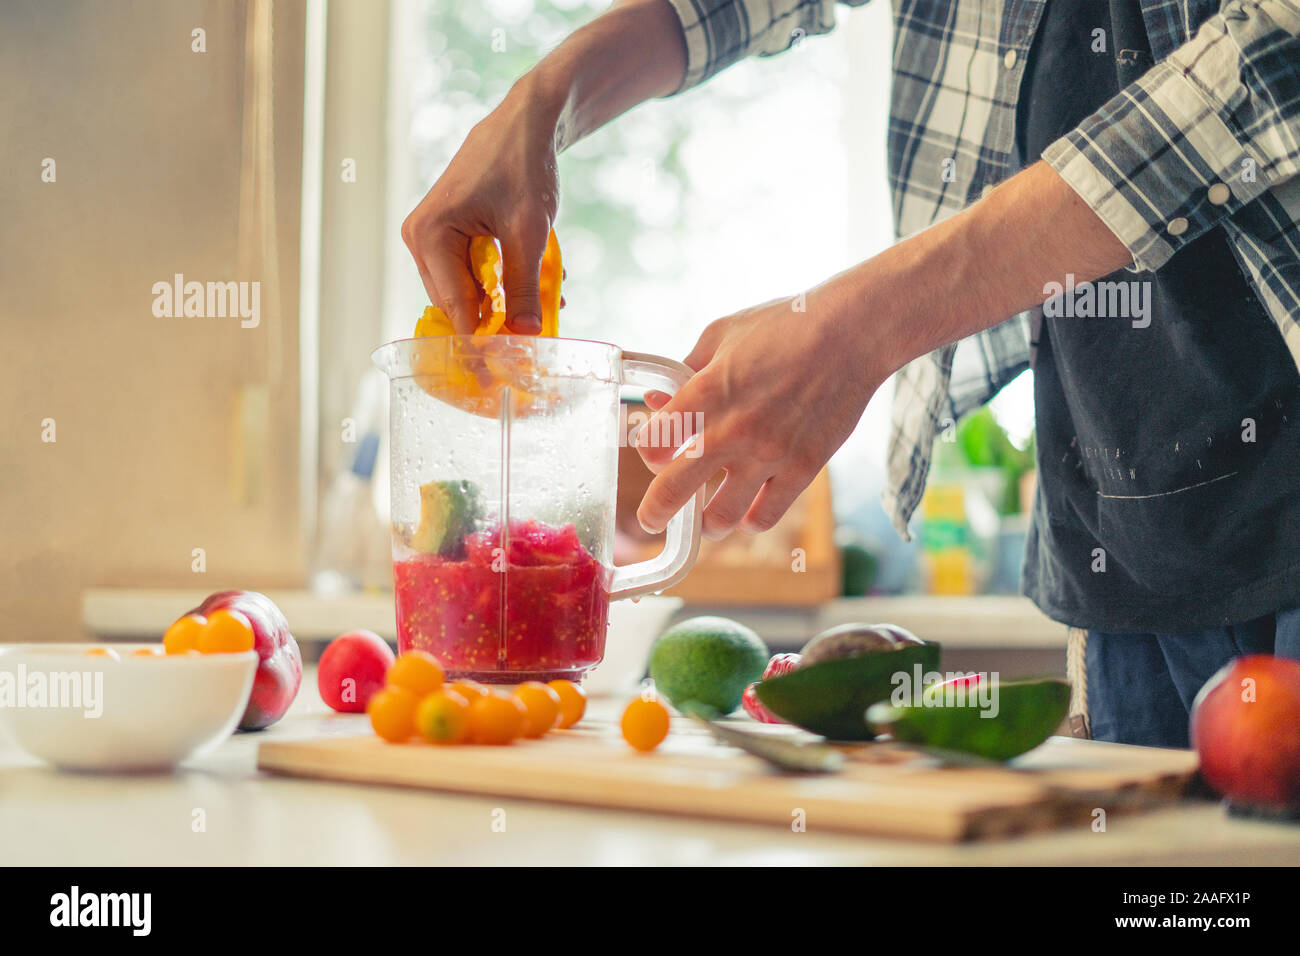 Couper les fruits et légumes à mettre dans Blender pour faire un smoothie mix Banque D'Images